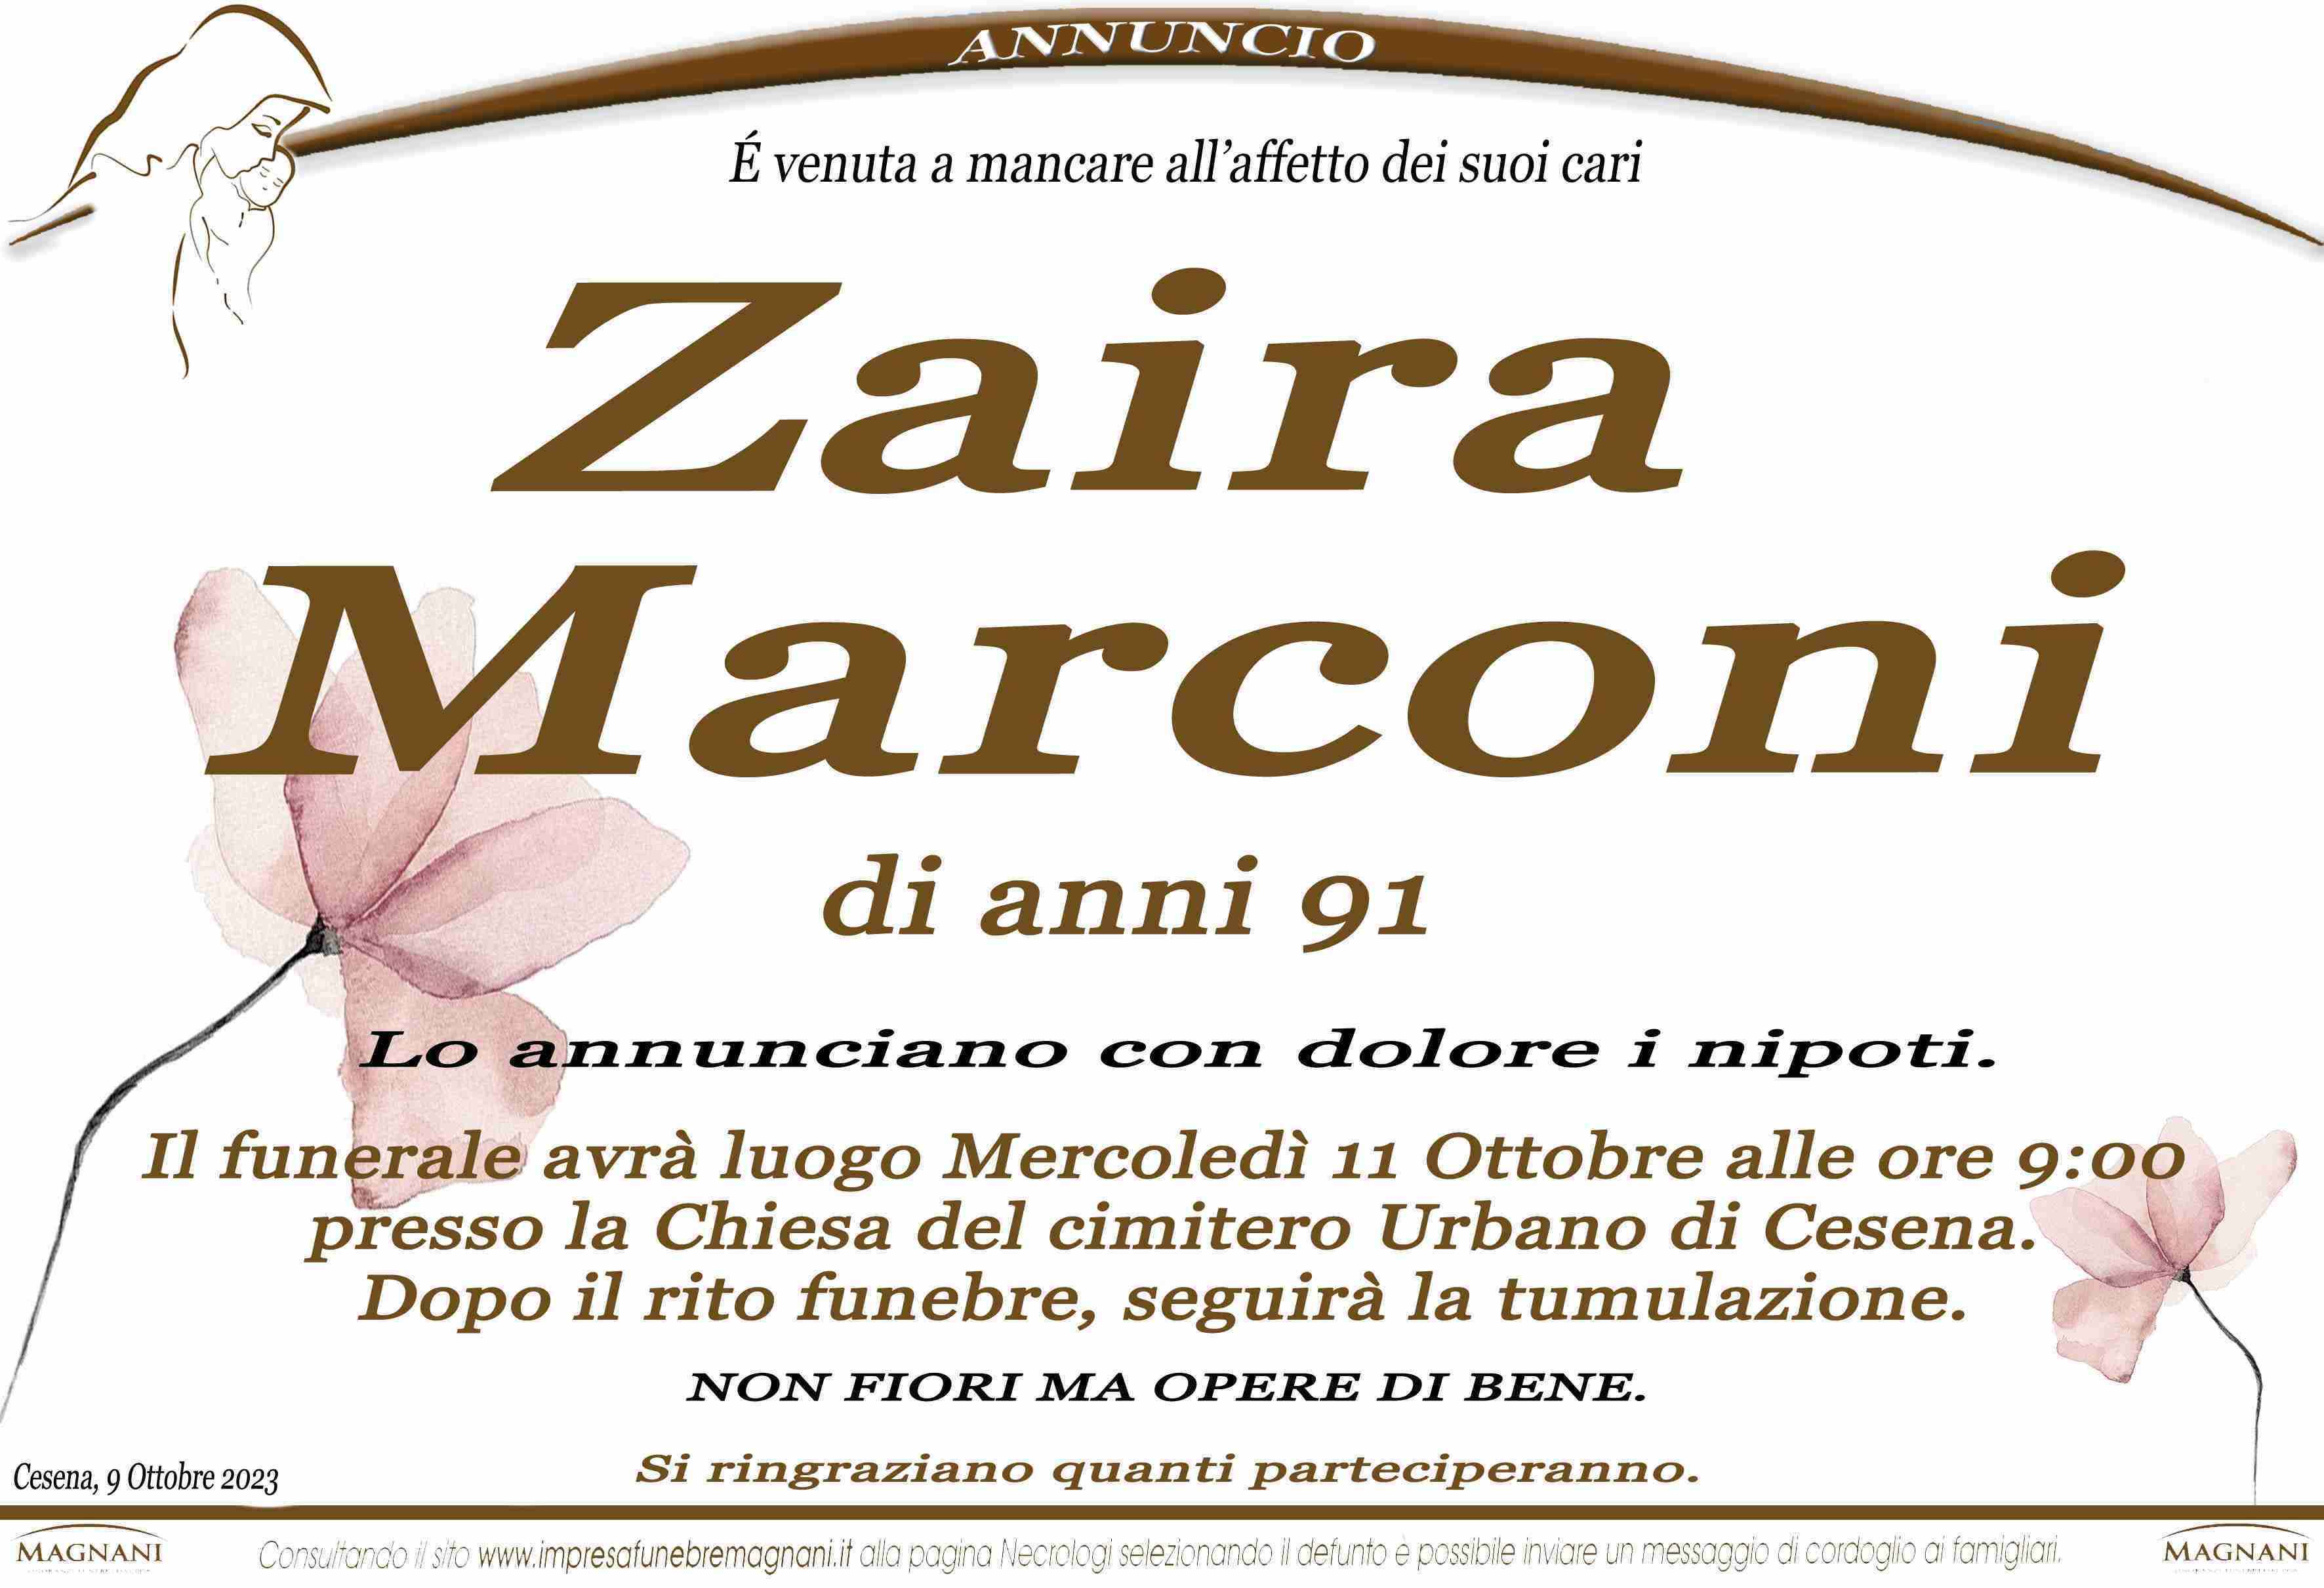 Zaira Marconi